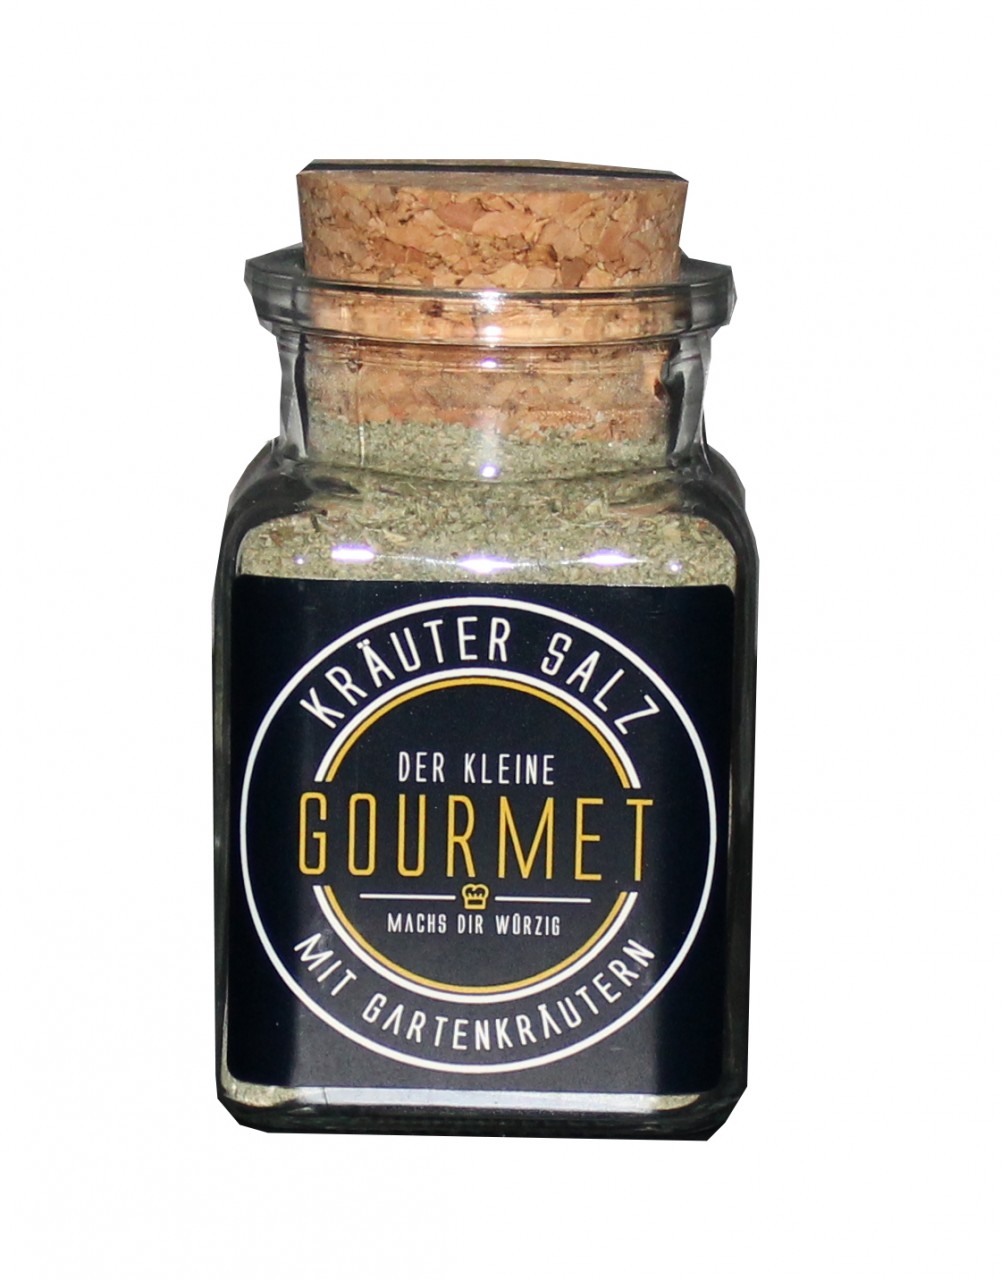 Der kleine Gourmet - Kräuter Salz